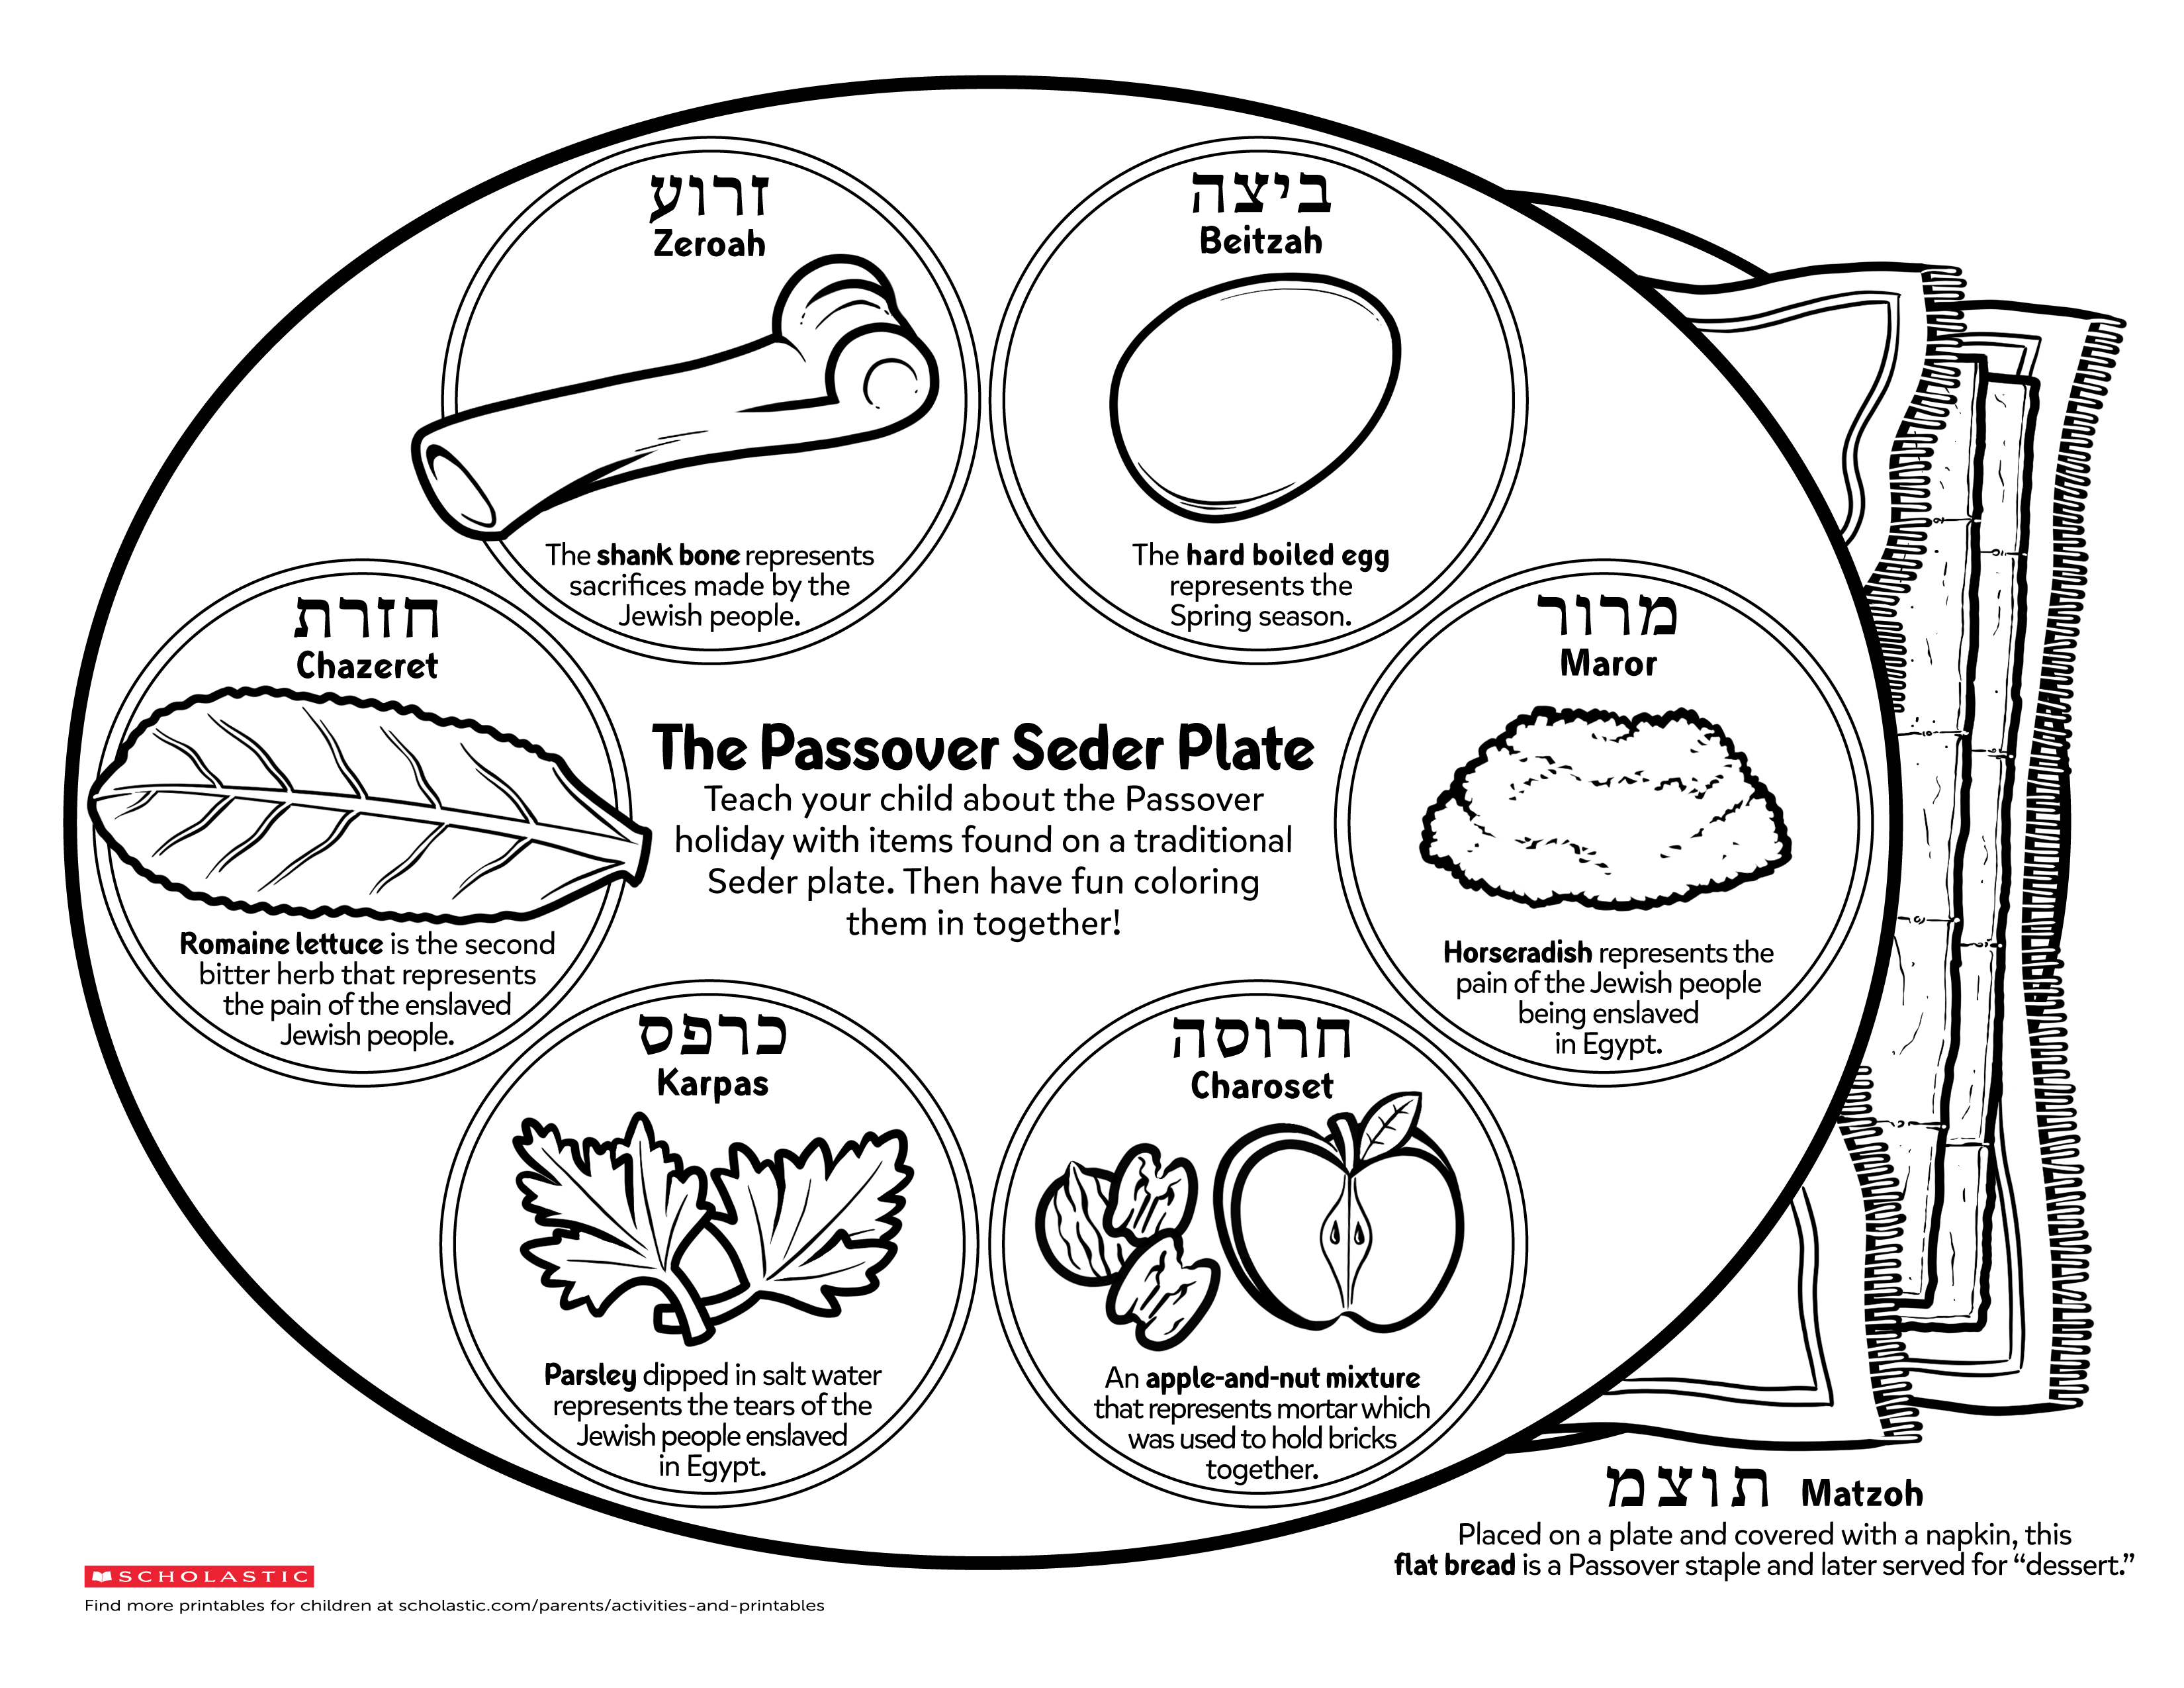 Top Children's Passover Seder Printable Obrien's Website